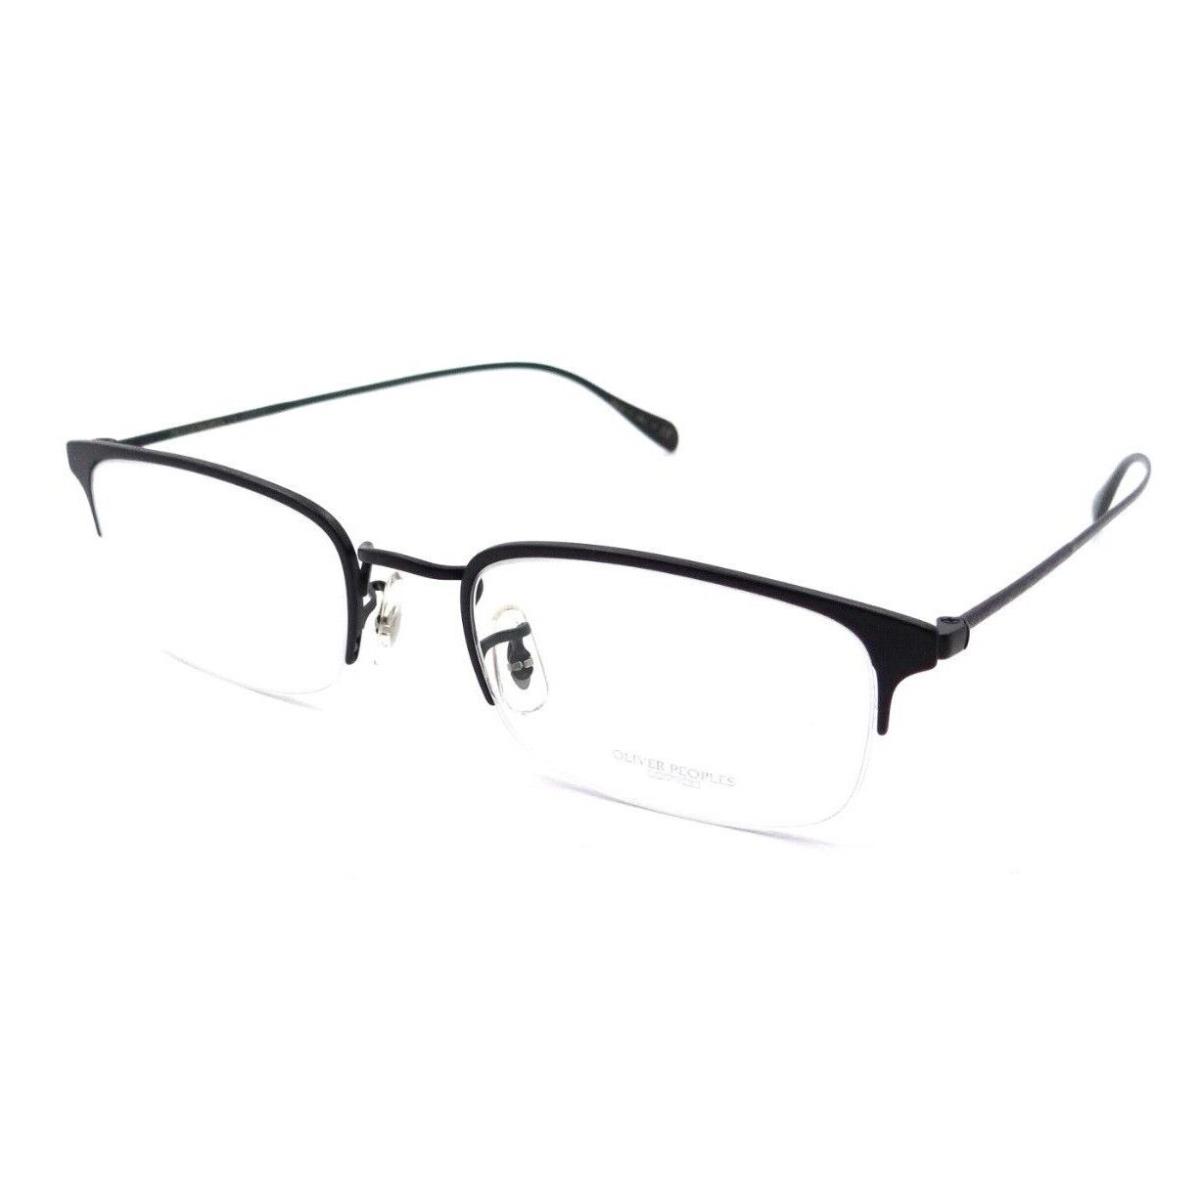 Oliver Peoples Eyeglasses Frames OV 1273 5062 51-20-145 Codner Matte Black Italy